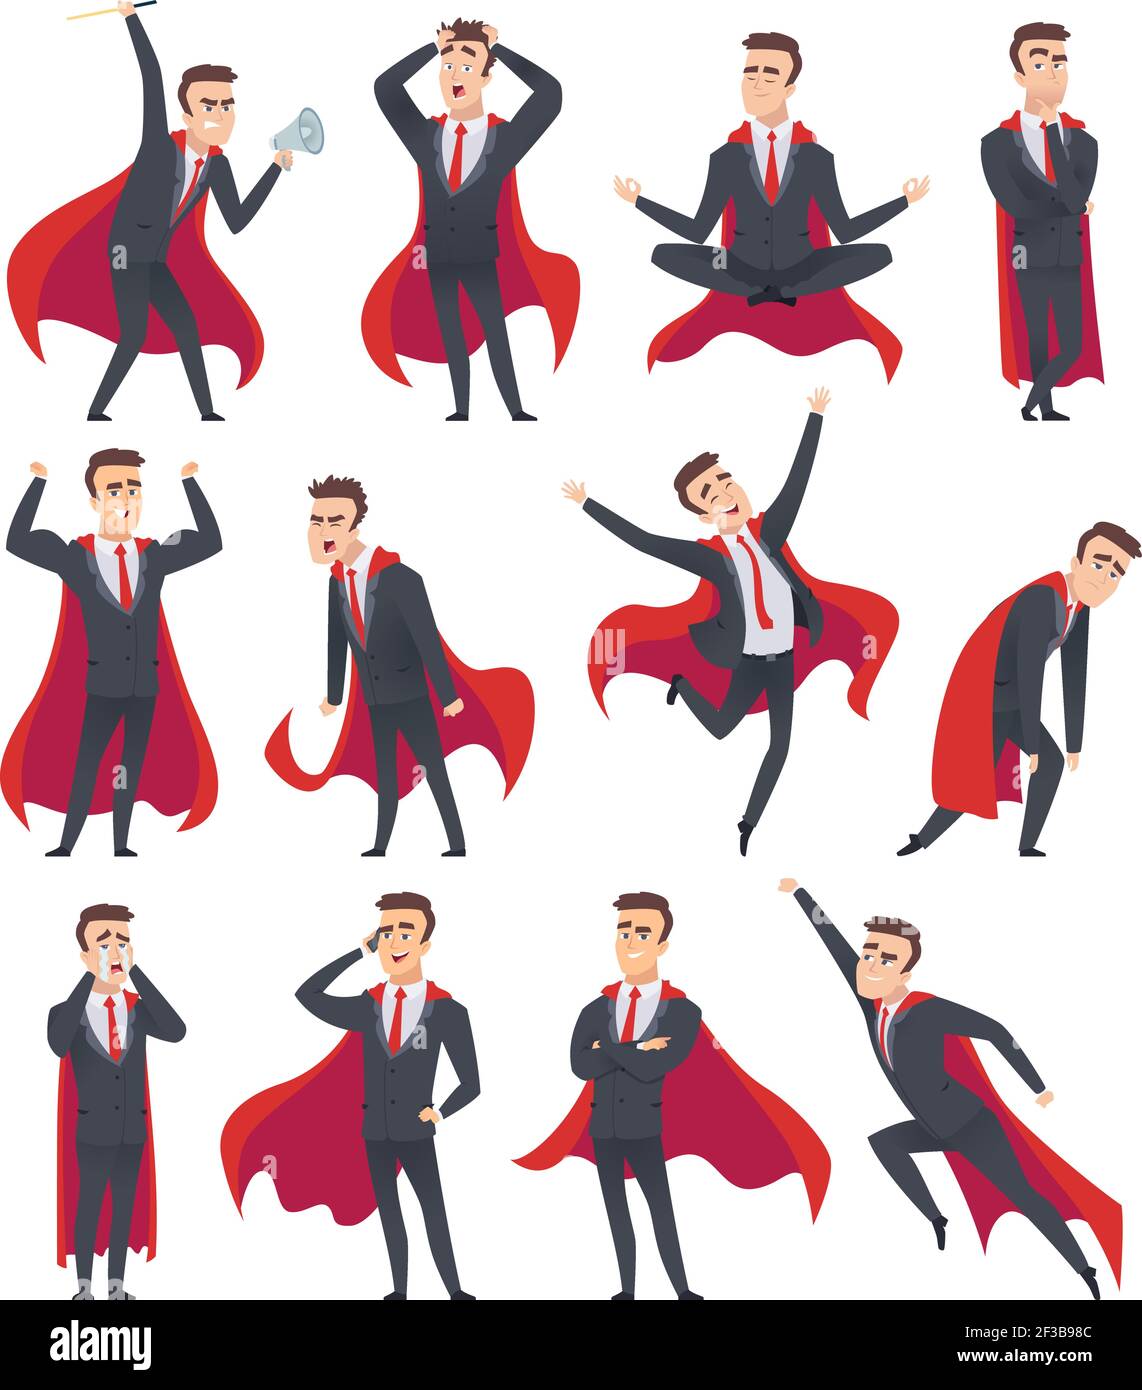 Superhelden von Geschäftsleuten. Männliche Charaktere in Aktion Posen von Superhelden Business Person Vektor Cartoons Stock Vektor